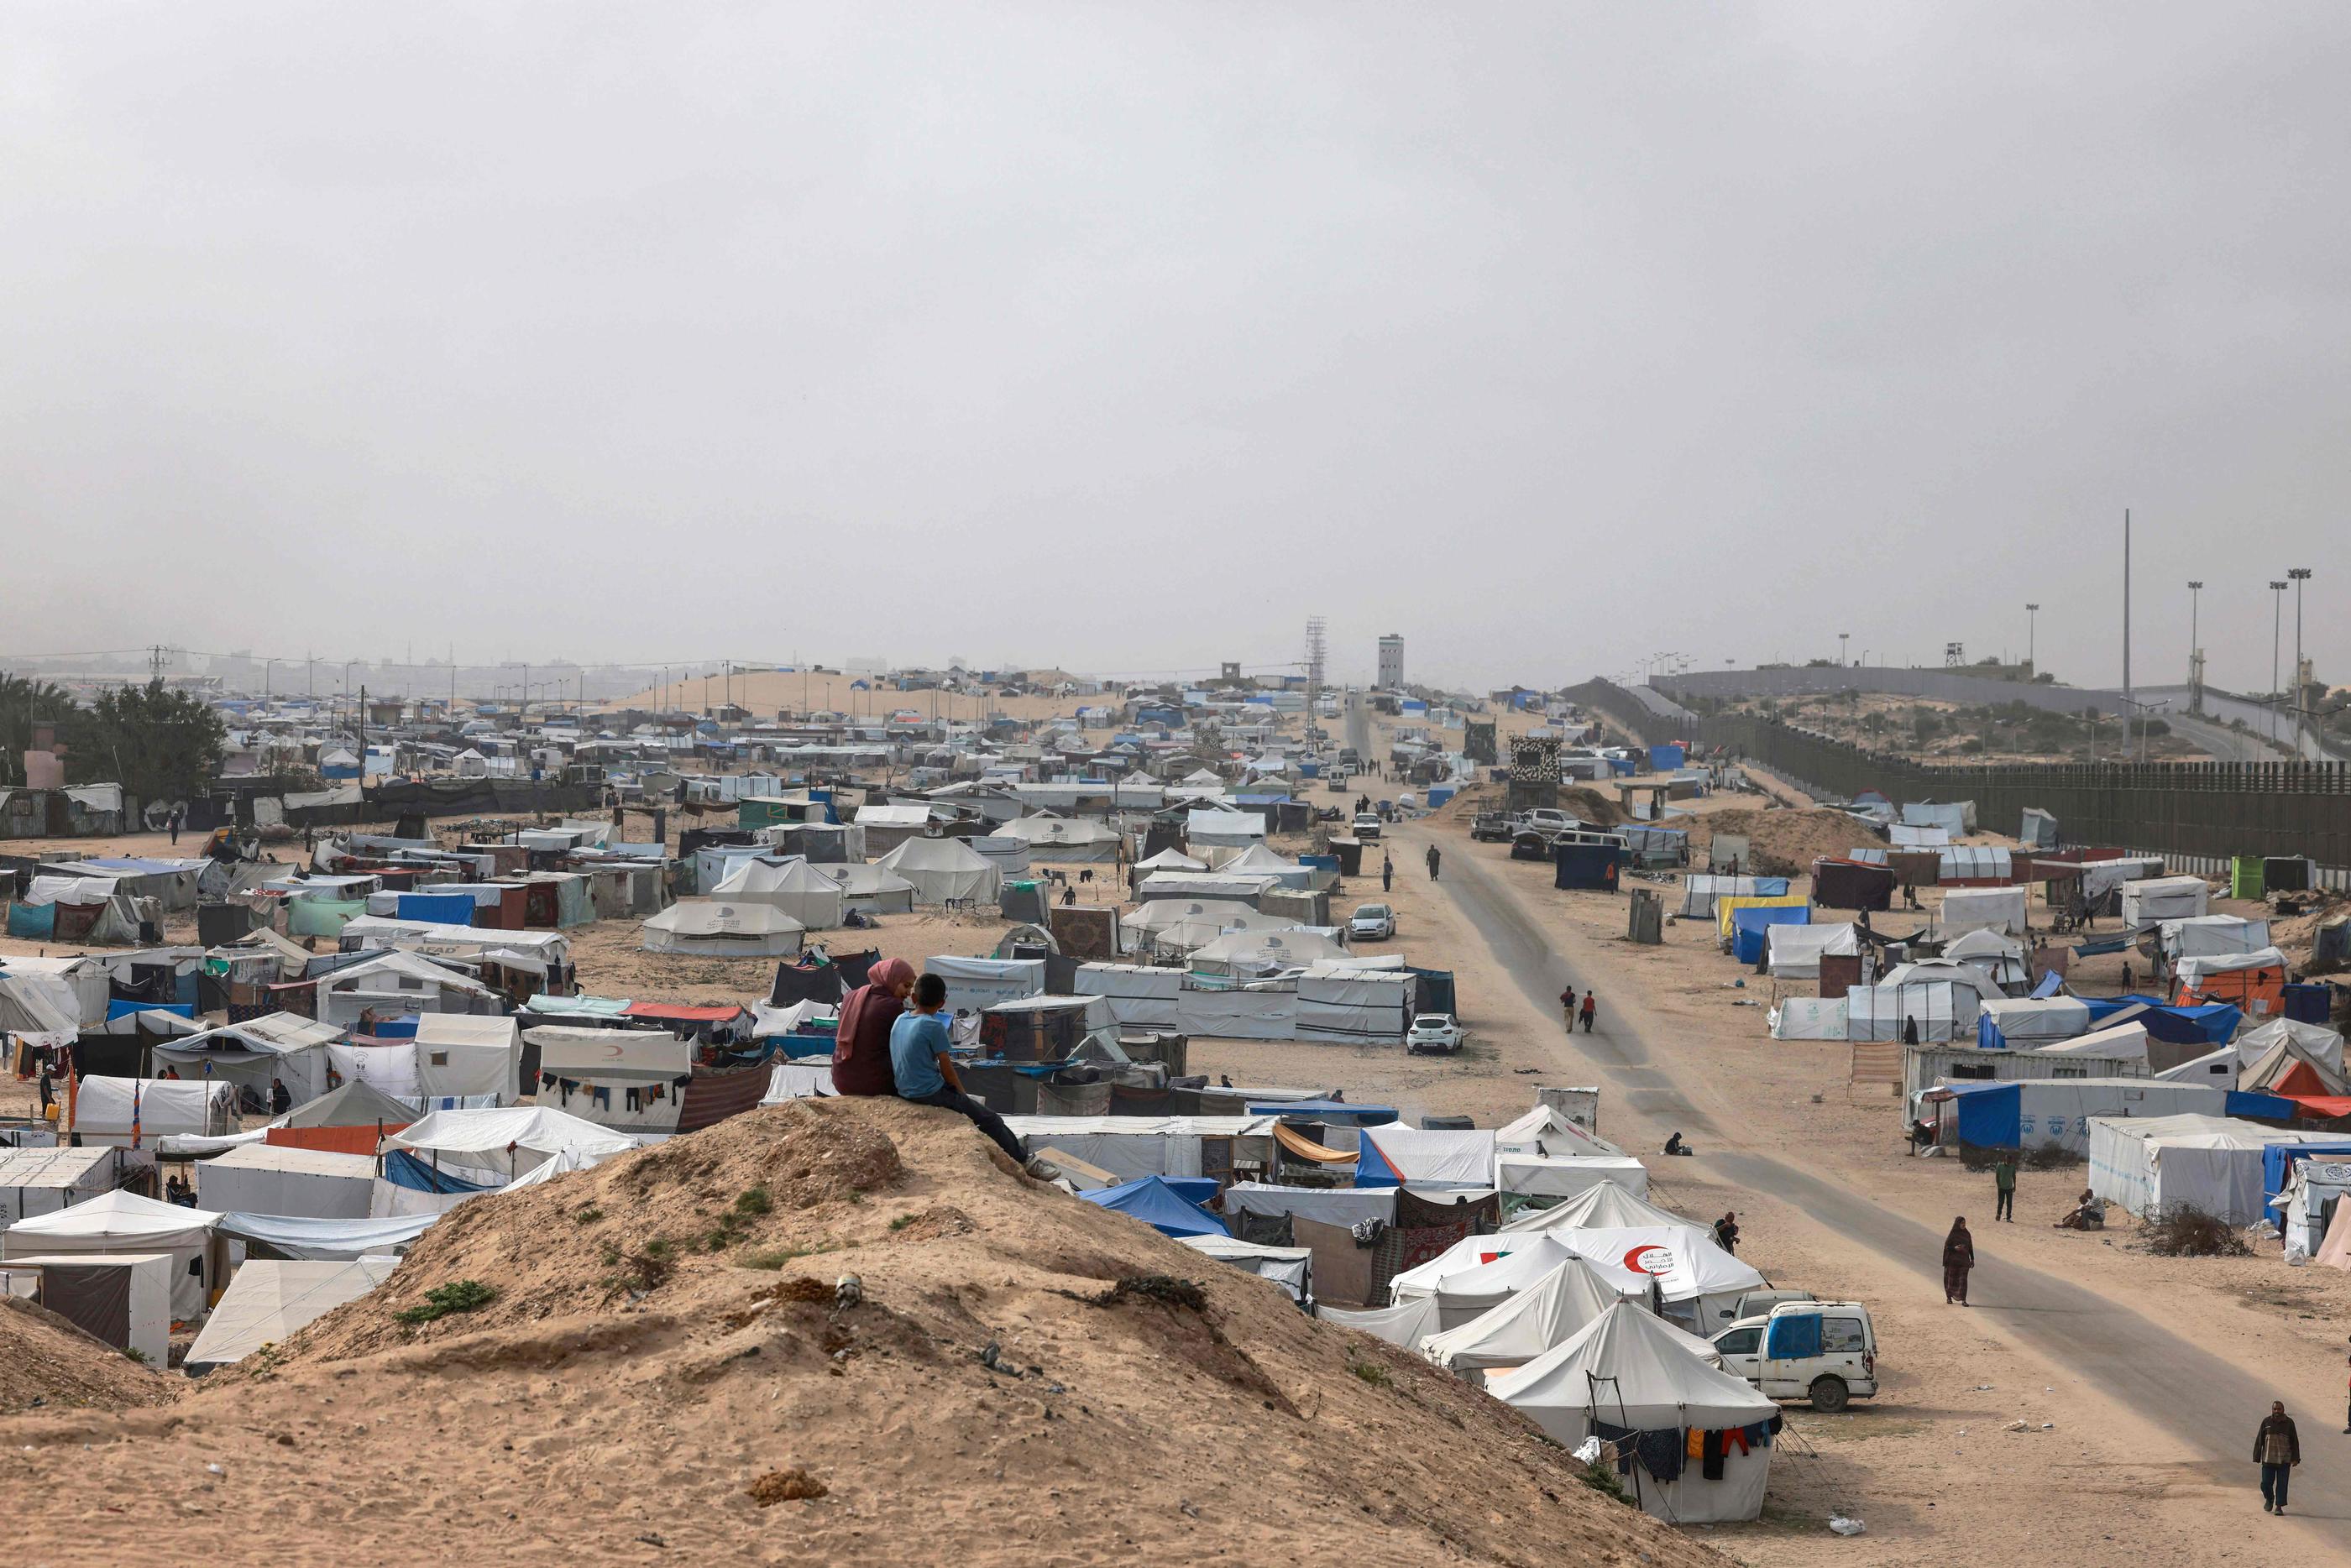 De nombreuses capitales et organisations humanitaires redoutent un bain de sang dans la ville de Rafah où s’entassent un million et demi de Palestiniens, pour beaucoup dans des camps de tentes, sans eau ni électricité. AFP/MOHAMMED ABED